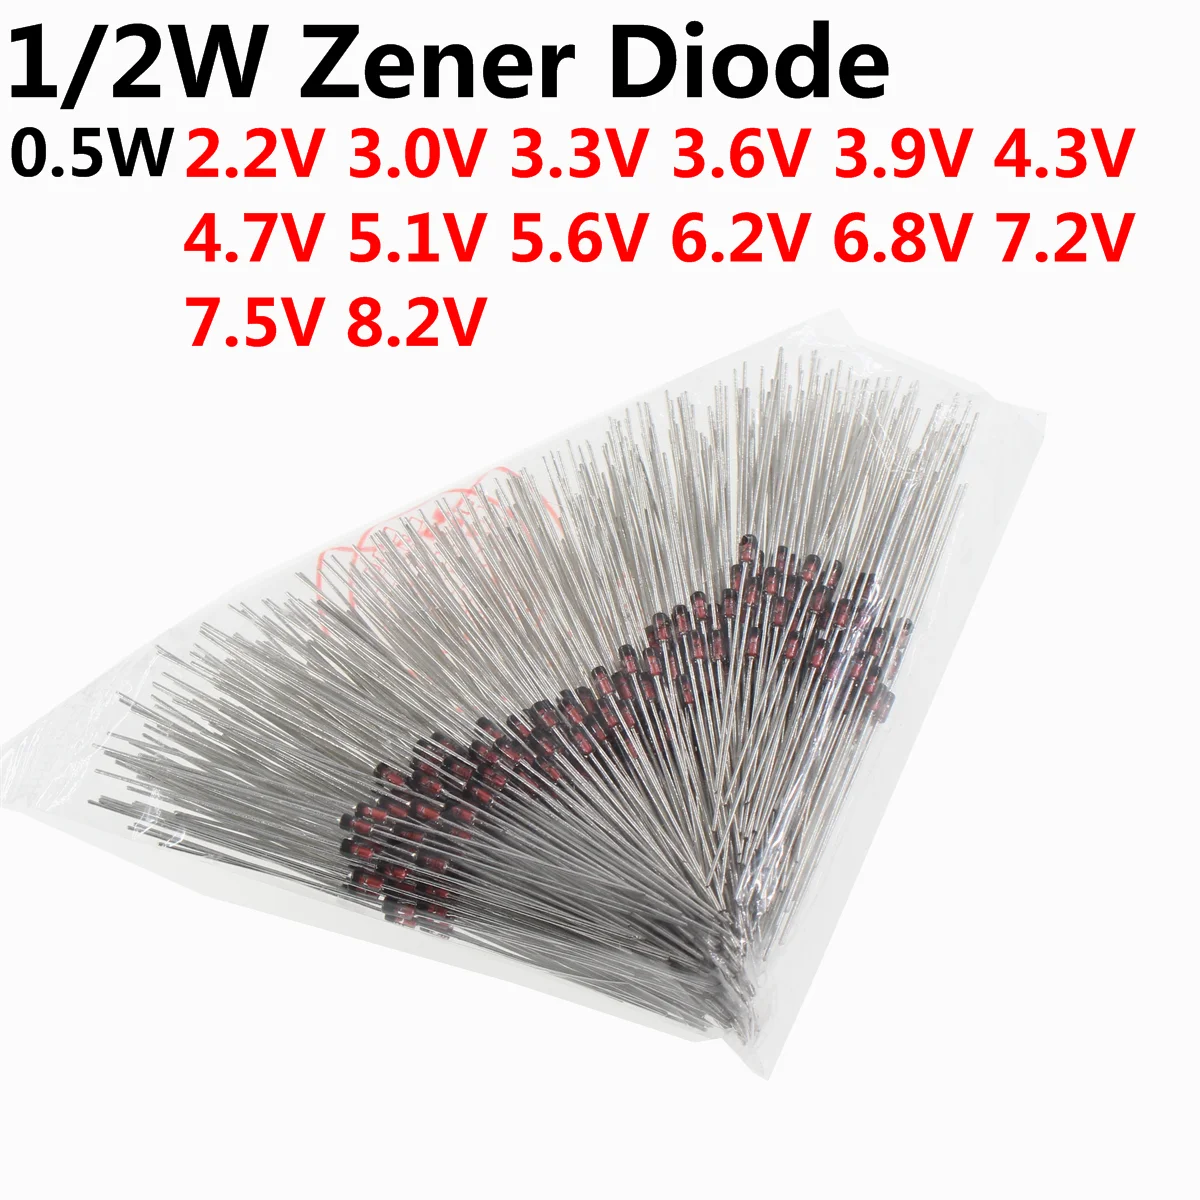 

500pcs 1/2W Zener Diode 0.5W DO-35 2.2V 3V 3.3V 3.6V 3.9V 4.3V 4.7V 5.1V 5.6V 6.2V 6.8V 7.2V 7.5V 8.2V